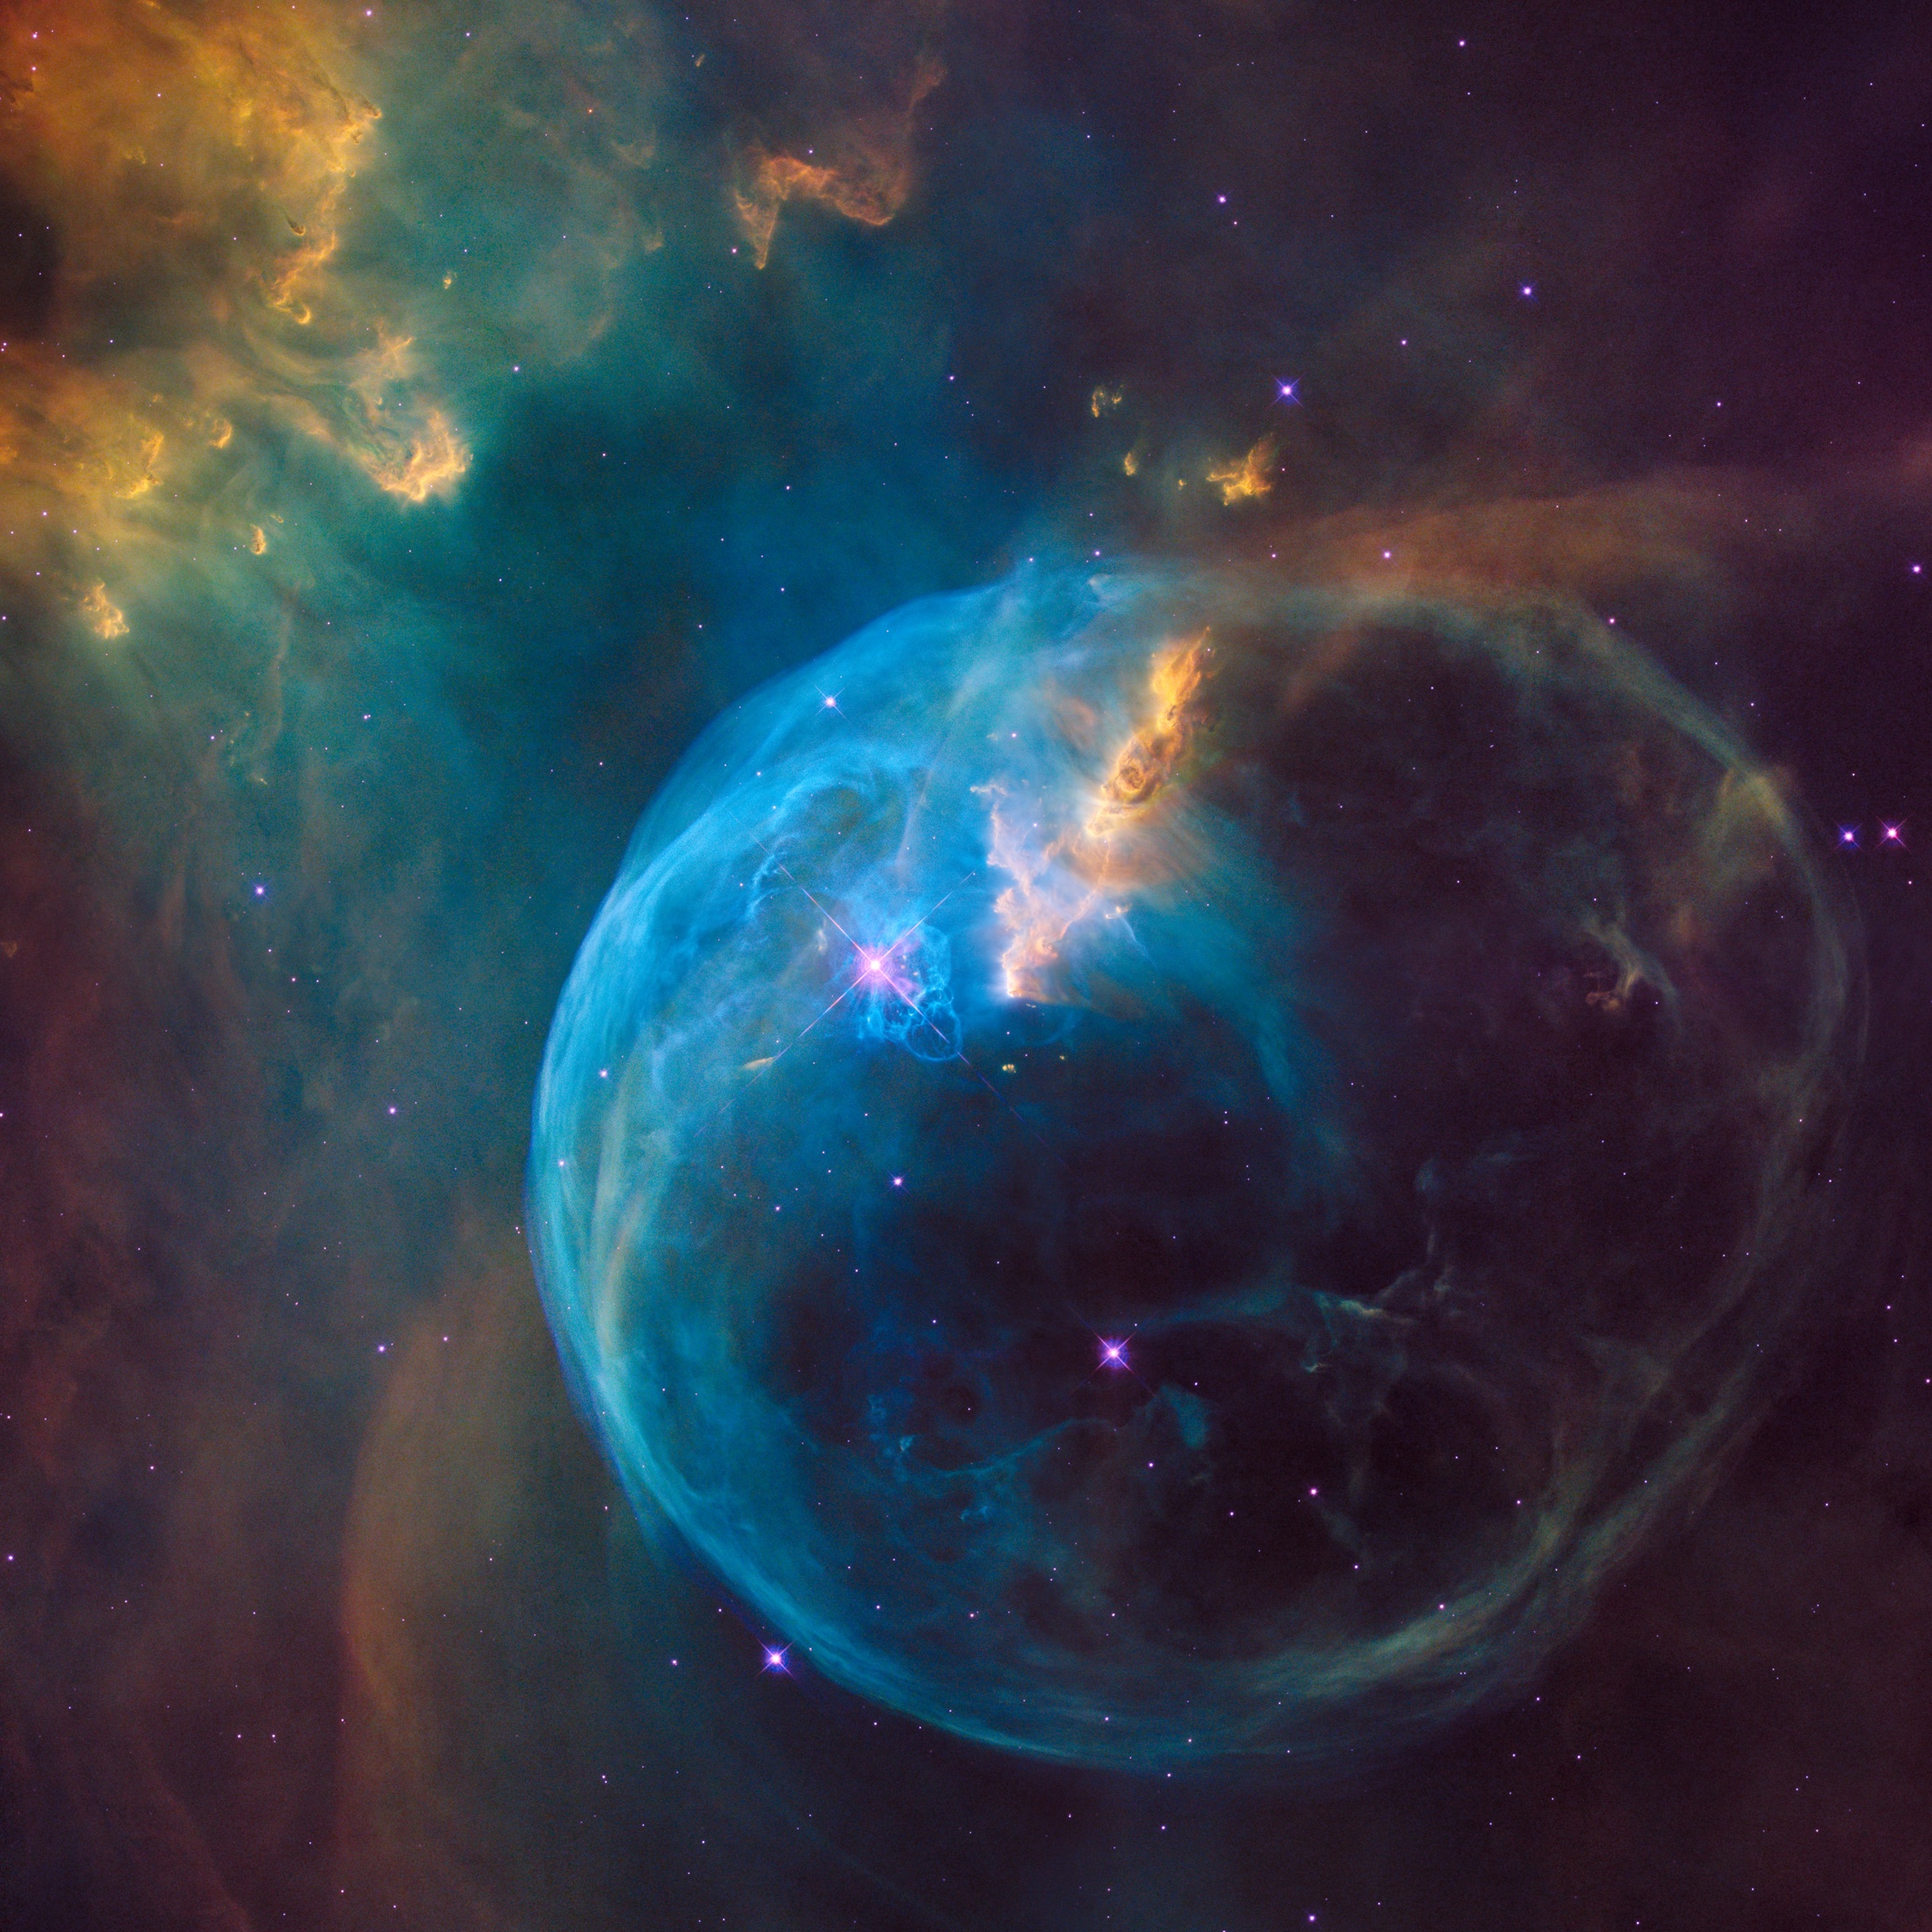 Bubble Nebula by the Hubble